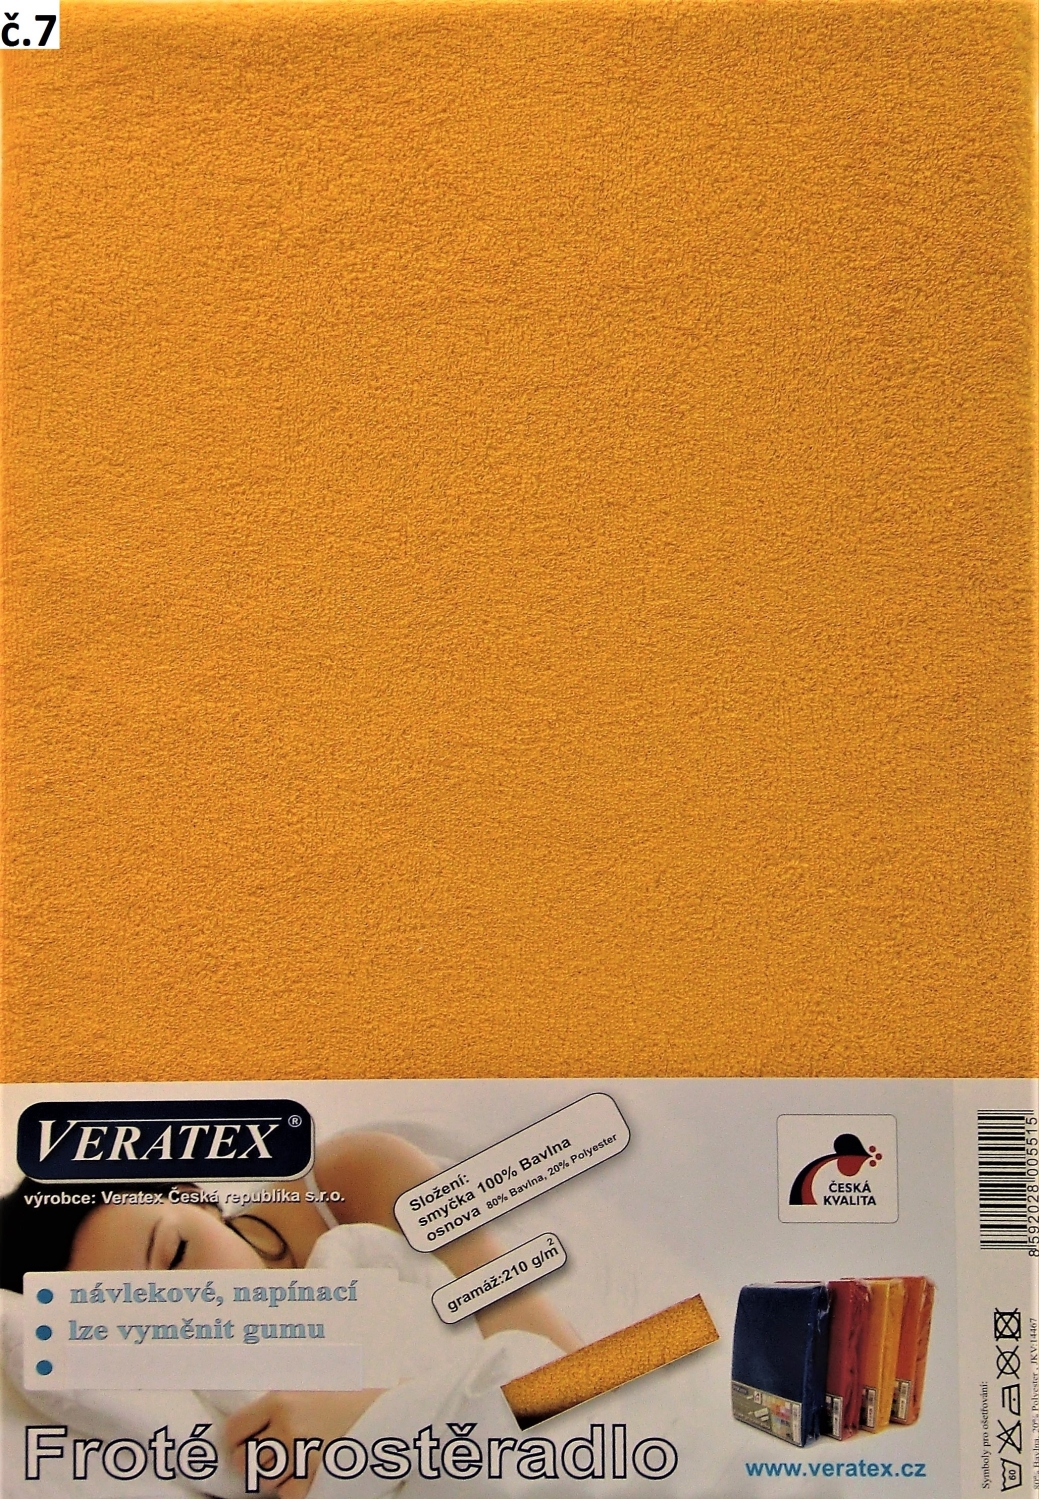 Veratex Froté prostěradlo 80x200/16 cm (č. 7-sytě žlutá)